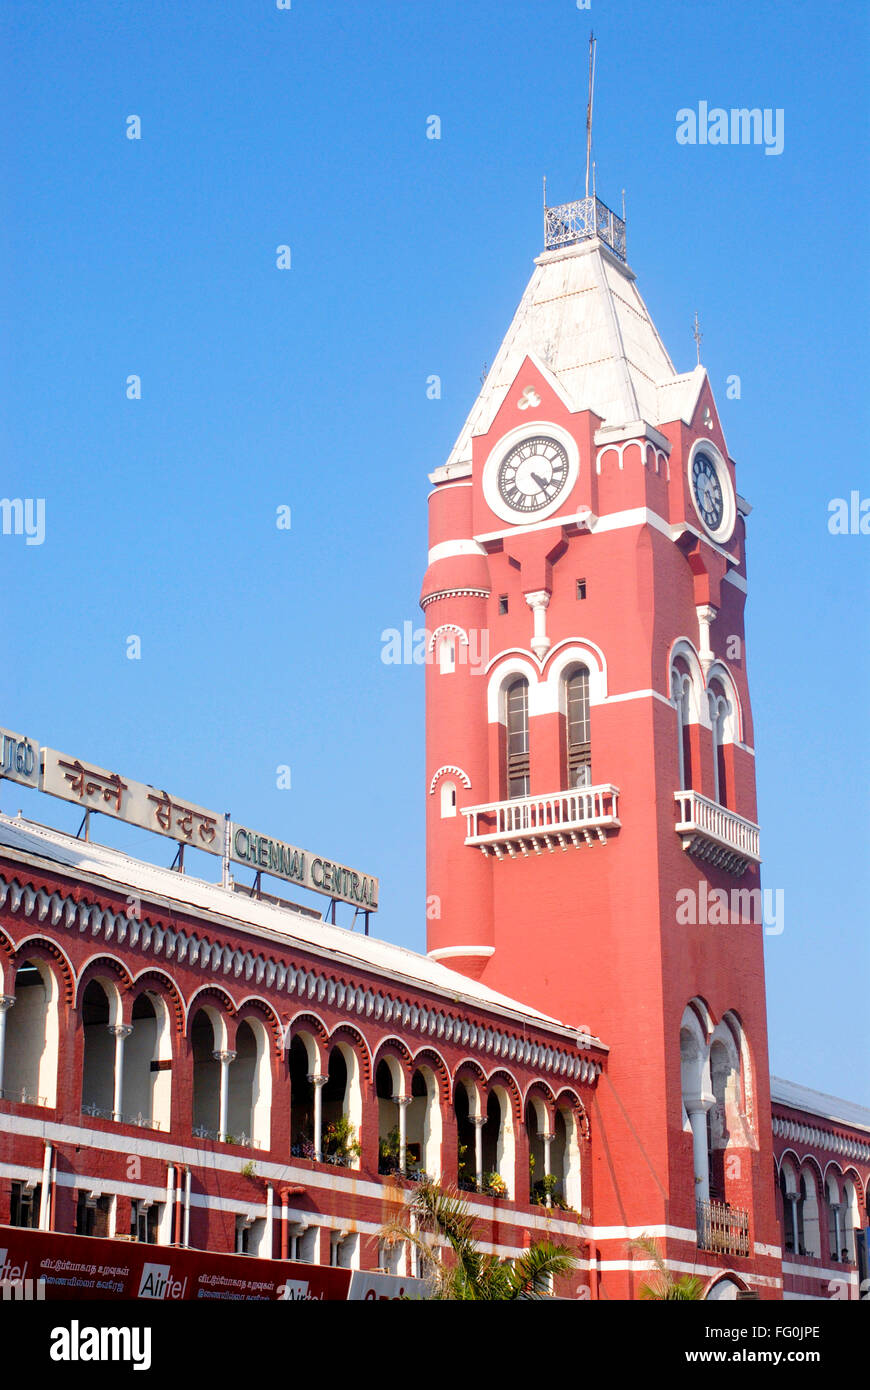 Tour de l'horloge et les fenêtres de la gare centrale de Chennai Madras , Chennai , Tamil Nadu sait , Inde Banque D'Images